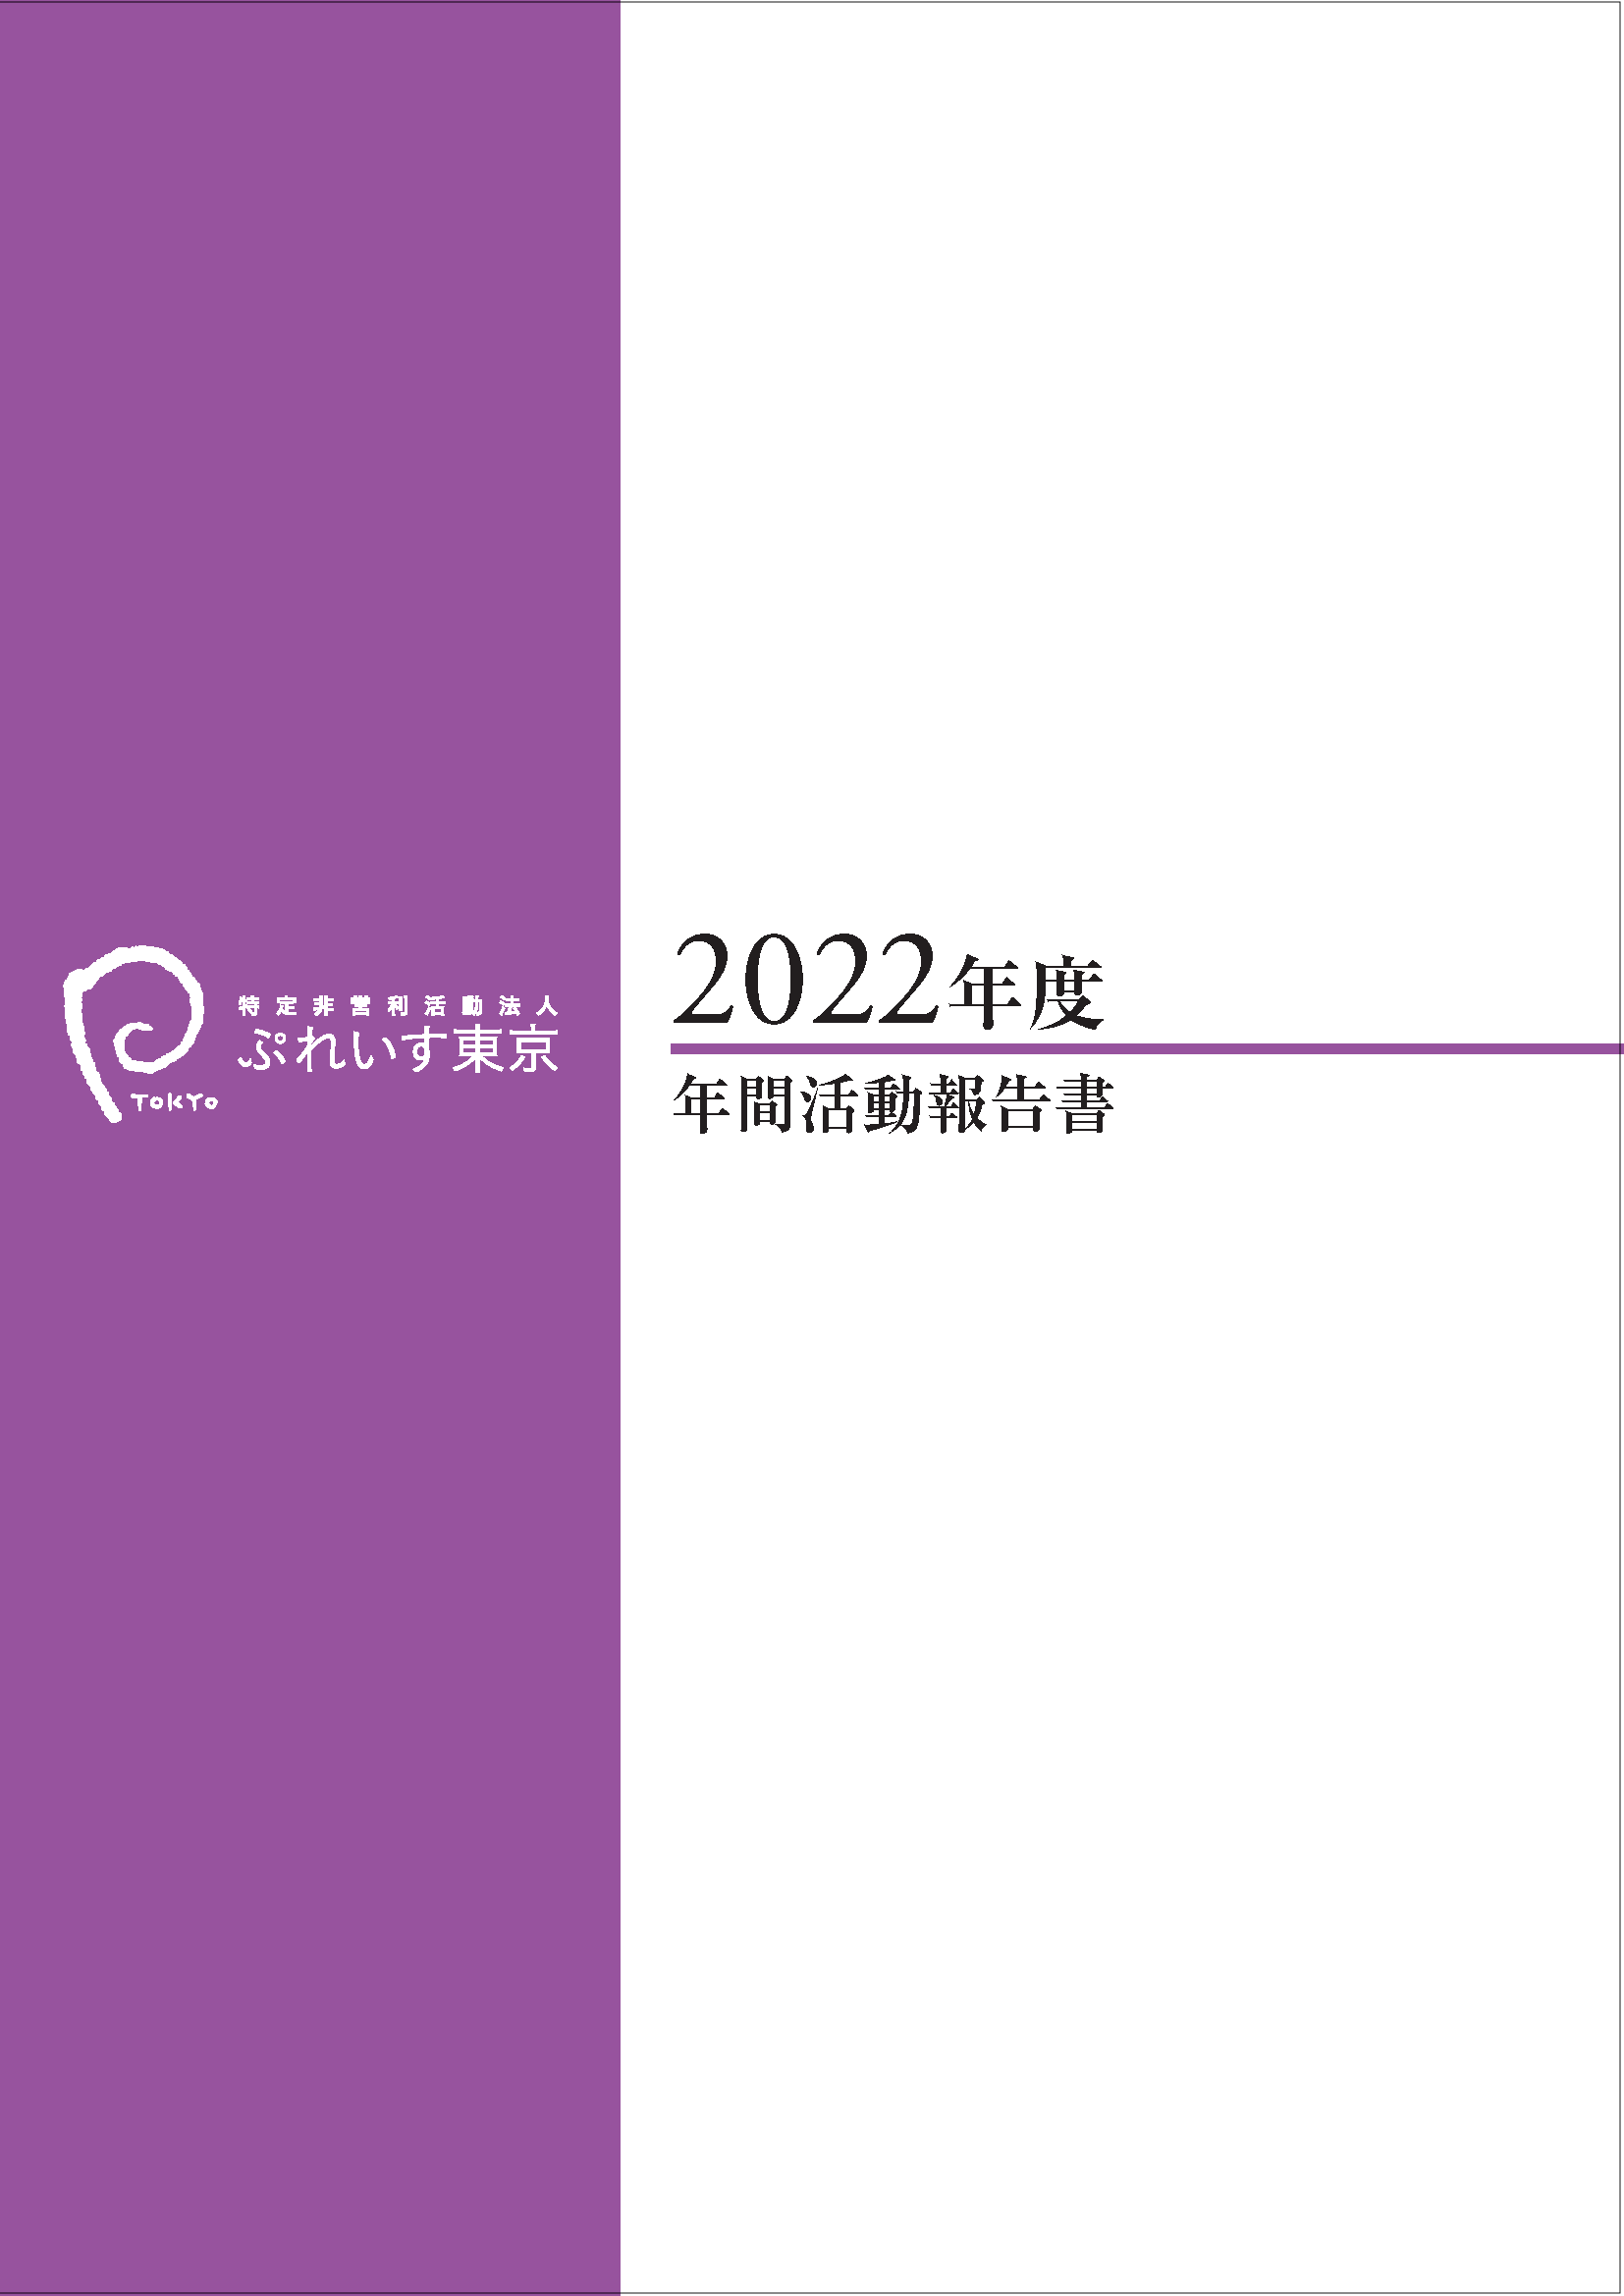 2022年度年間活動報告書